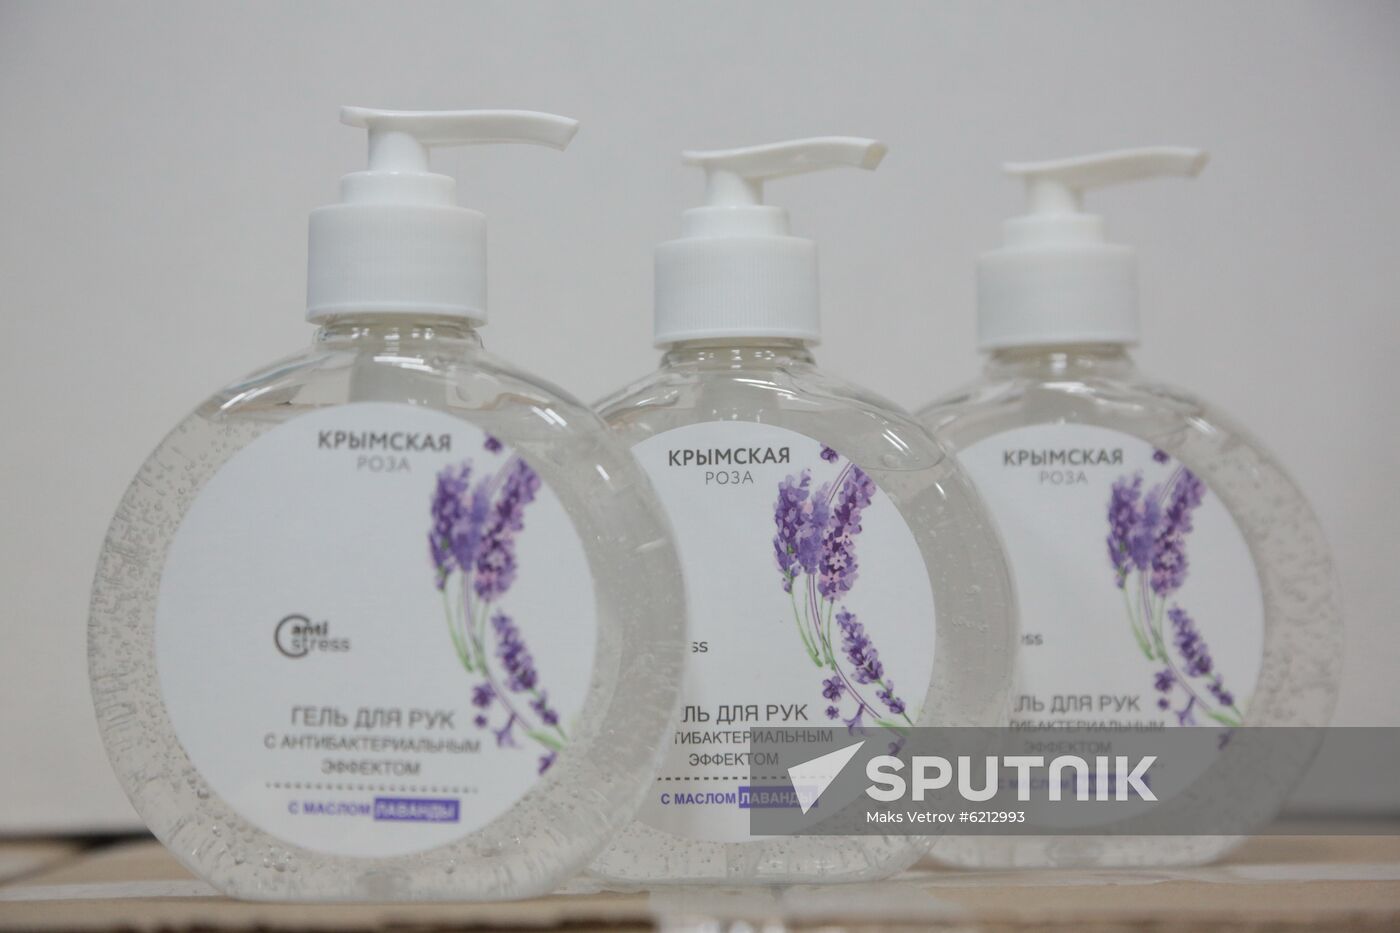 Russia Coronavirus Hand Sanitizer Plant